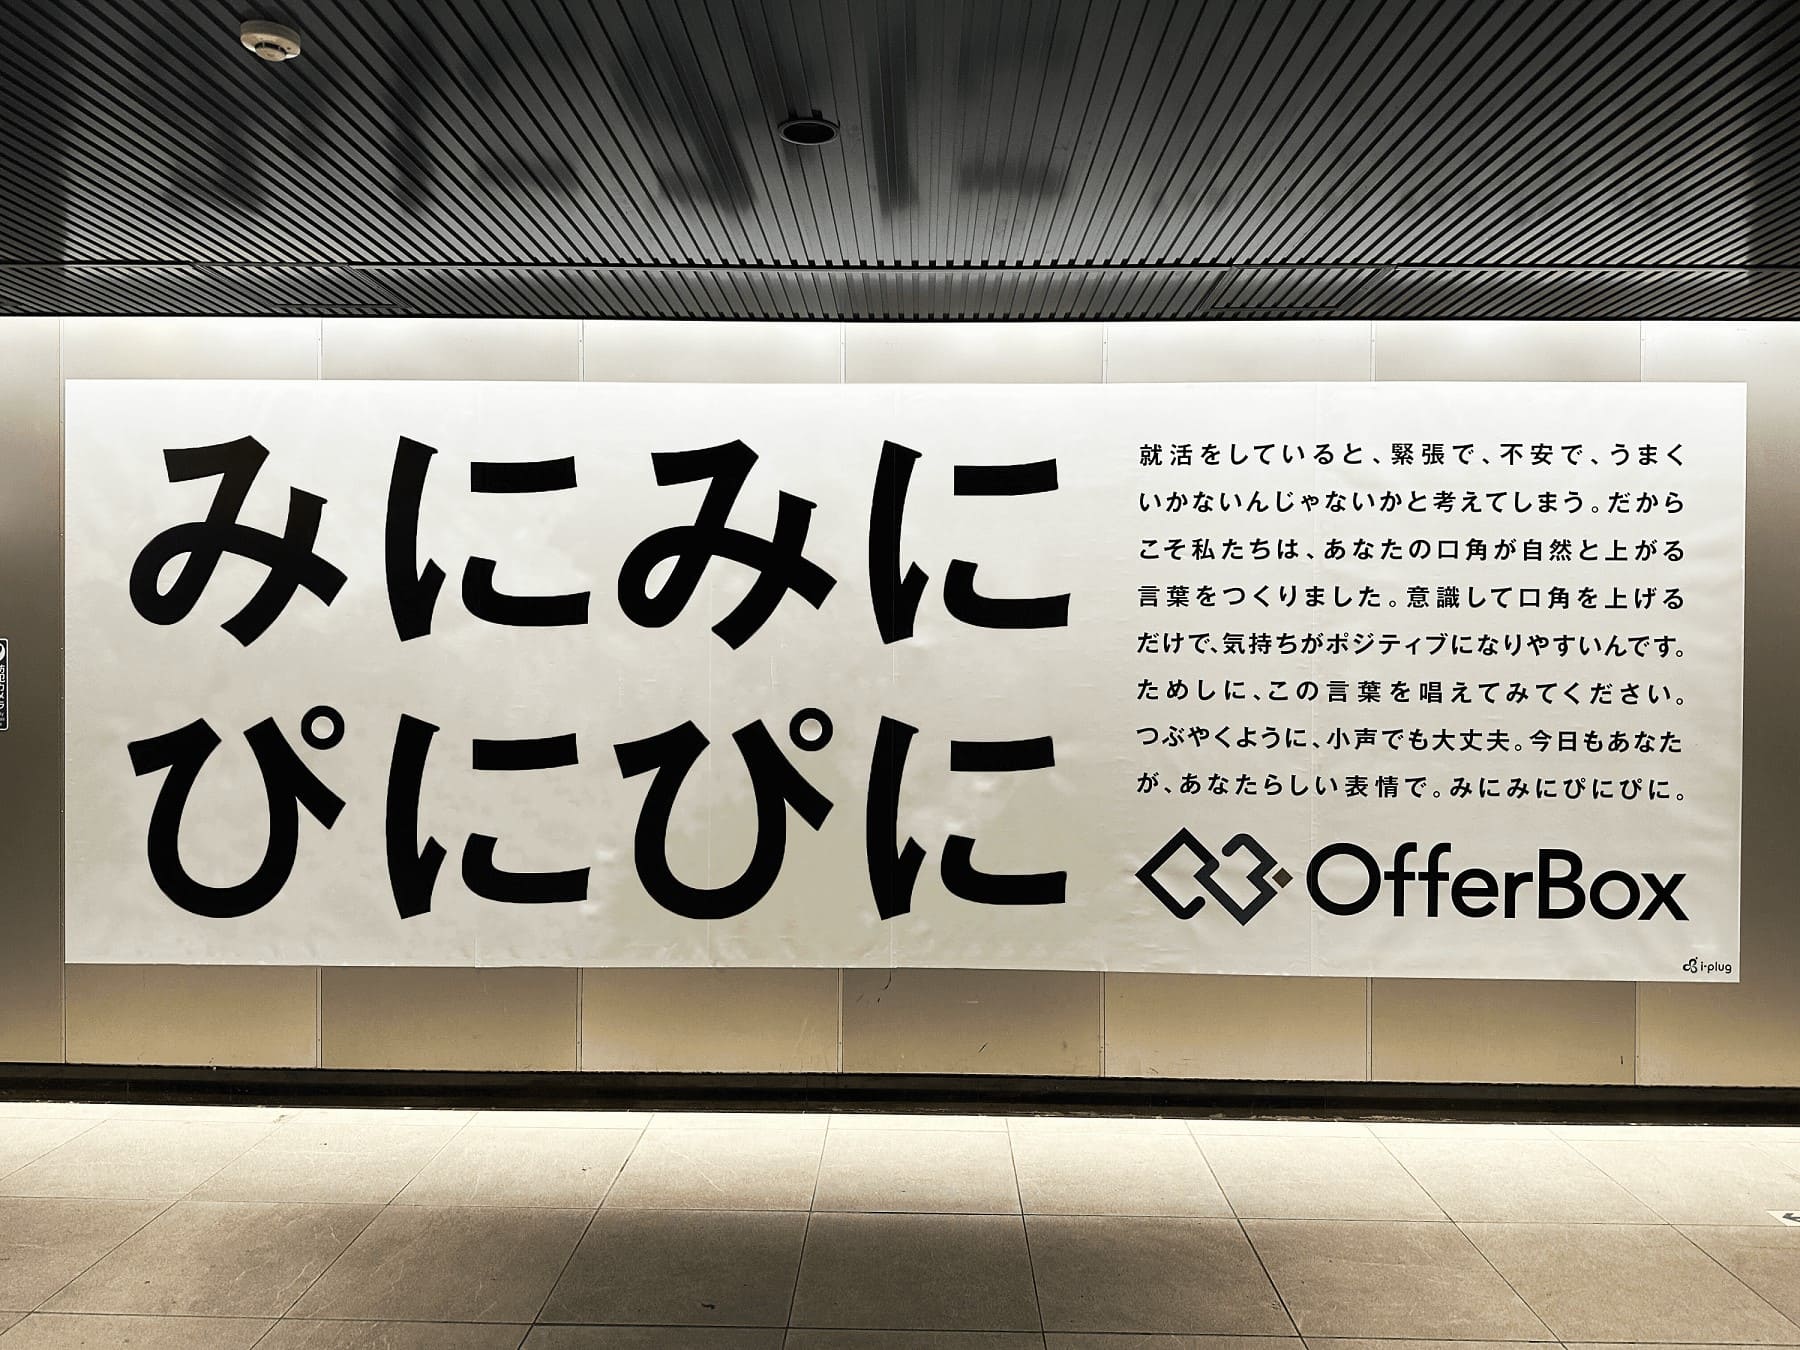 渋谷駅内の掲出広告「みにみにぴにぴに」